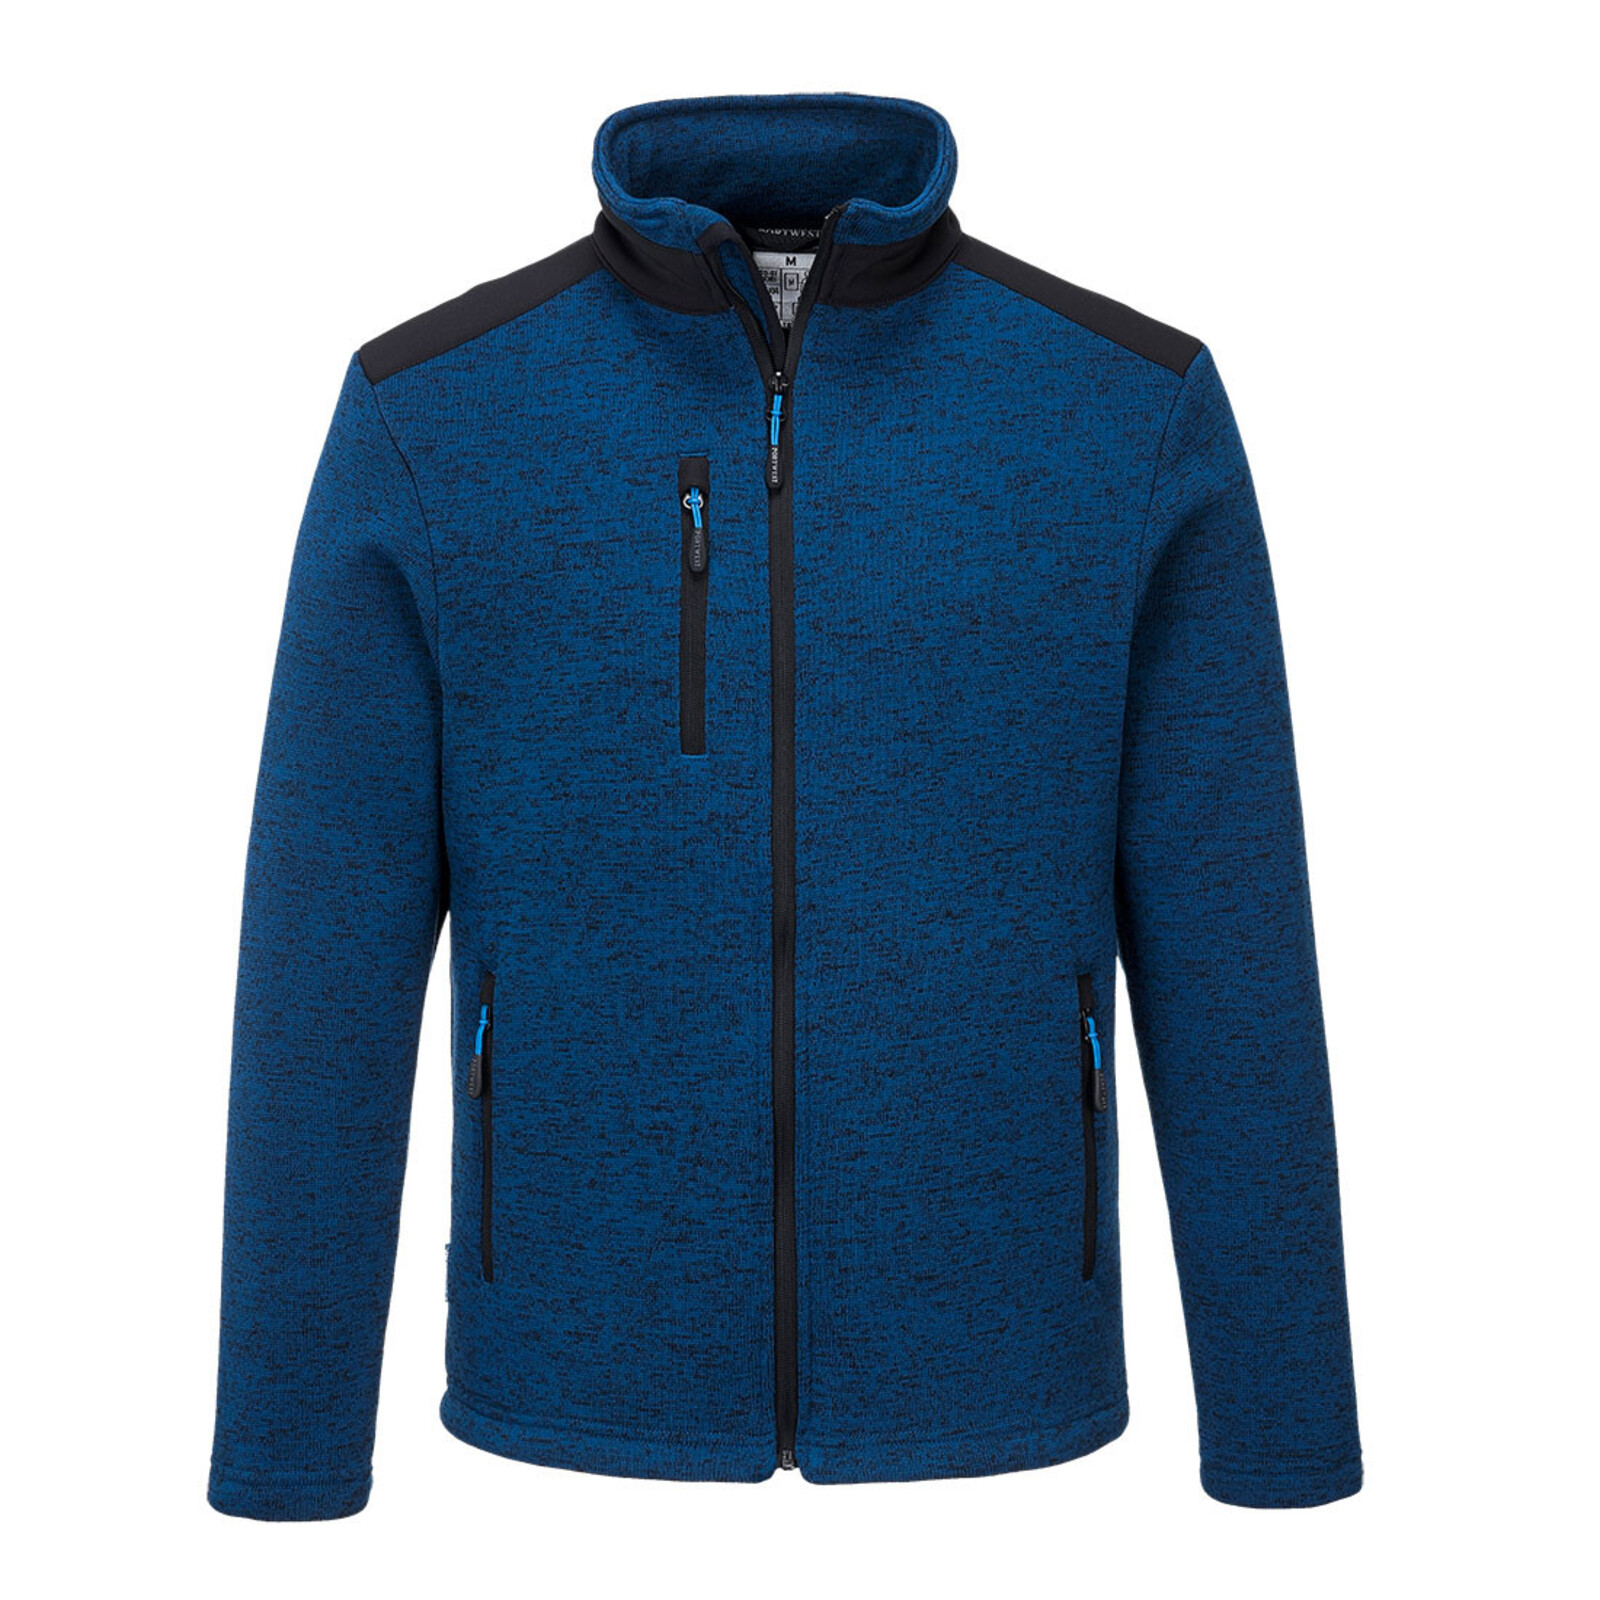 Pánska bunda Portwest KX3 Performance Fleece T830 - veľkosť: 3XL, farba: modrá/čierna